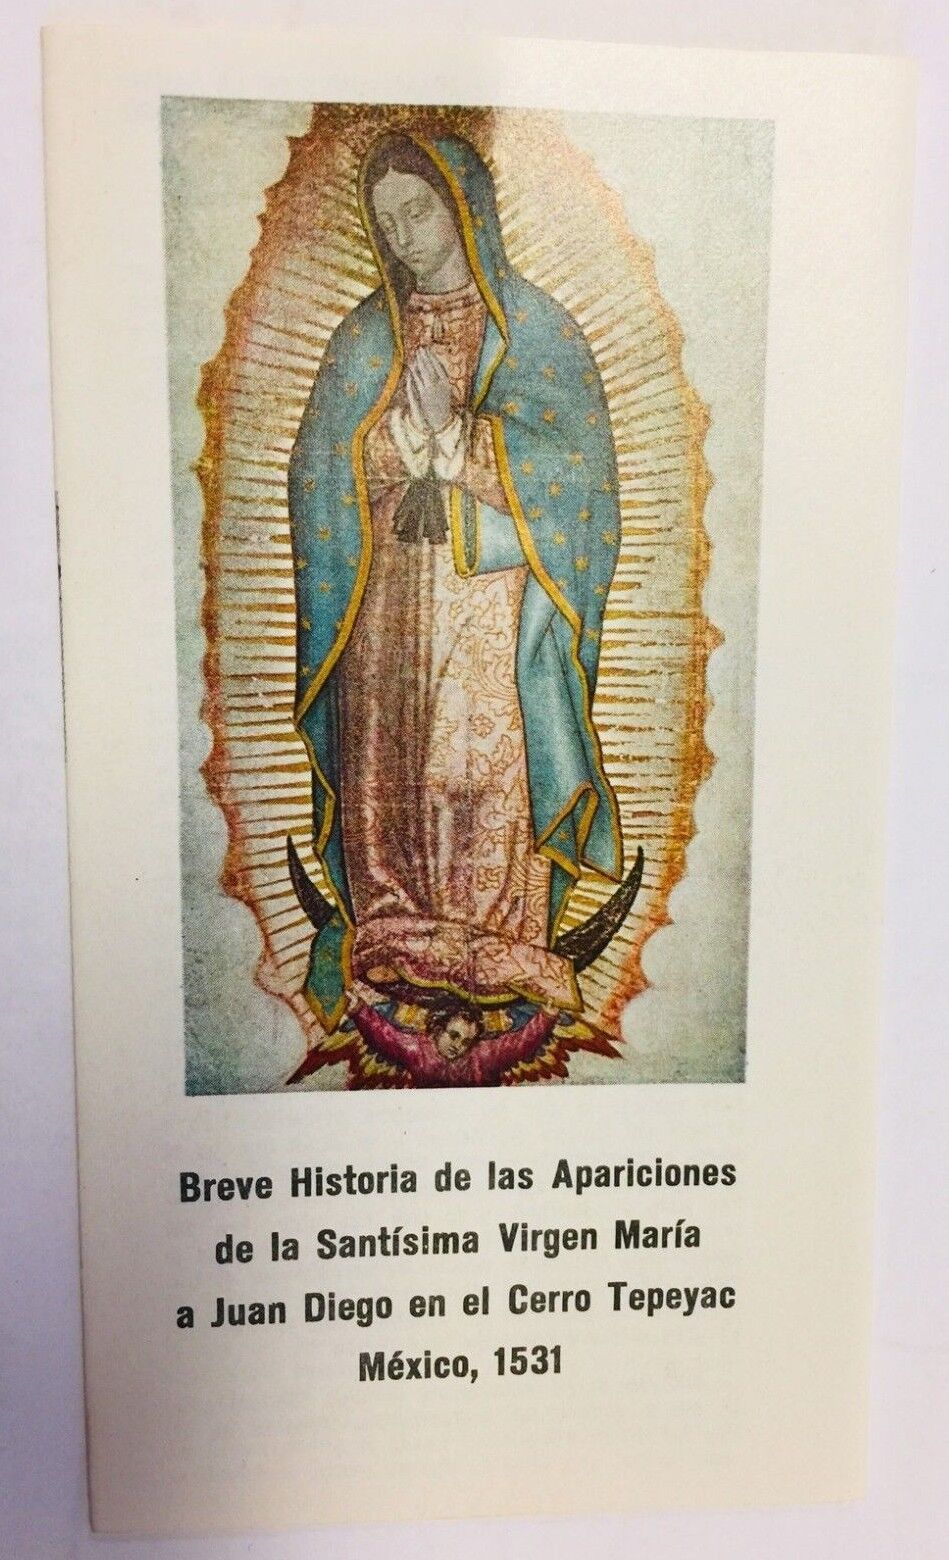 Breve Historia de las Apariciones de La Virgen de Guadalupe, en Español